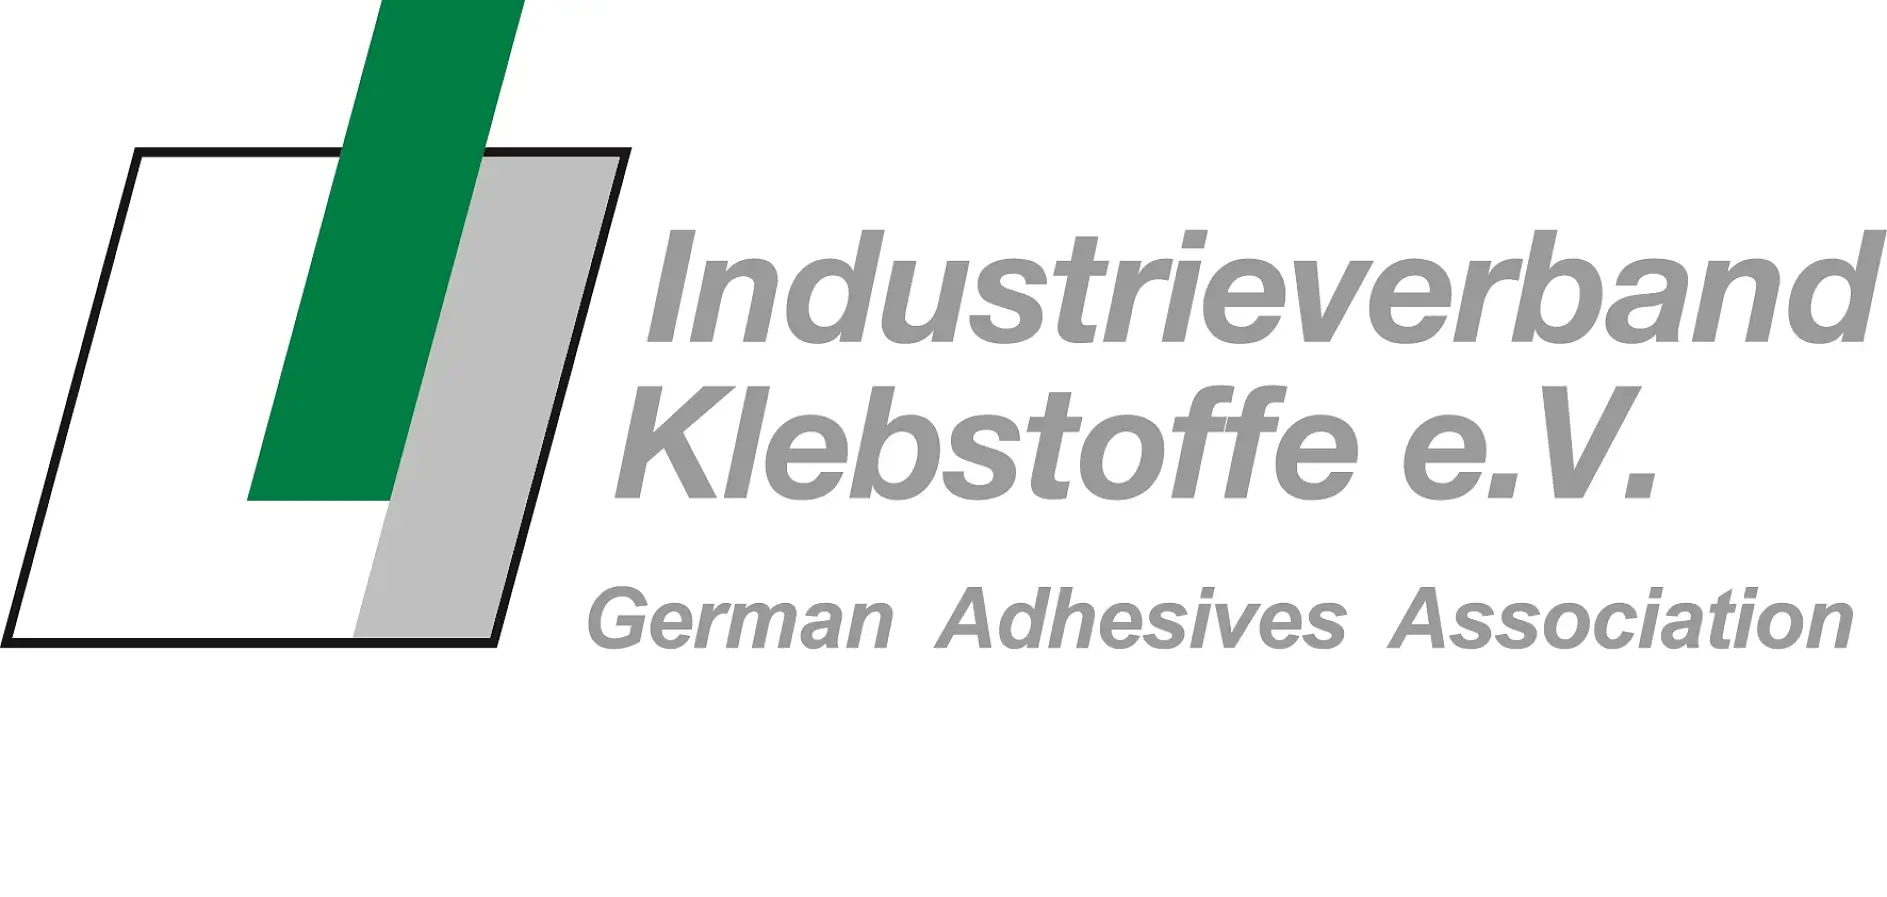 ドイツ接着剤工業会は、国別の粘着接合技術団体としては世界最大規模を誇り、同時に提供するサービスも多岐にわたります。